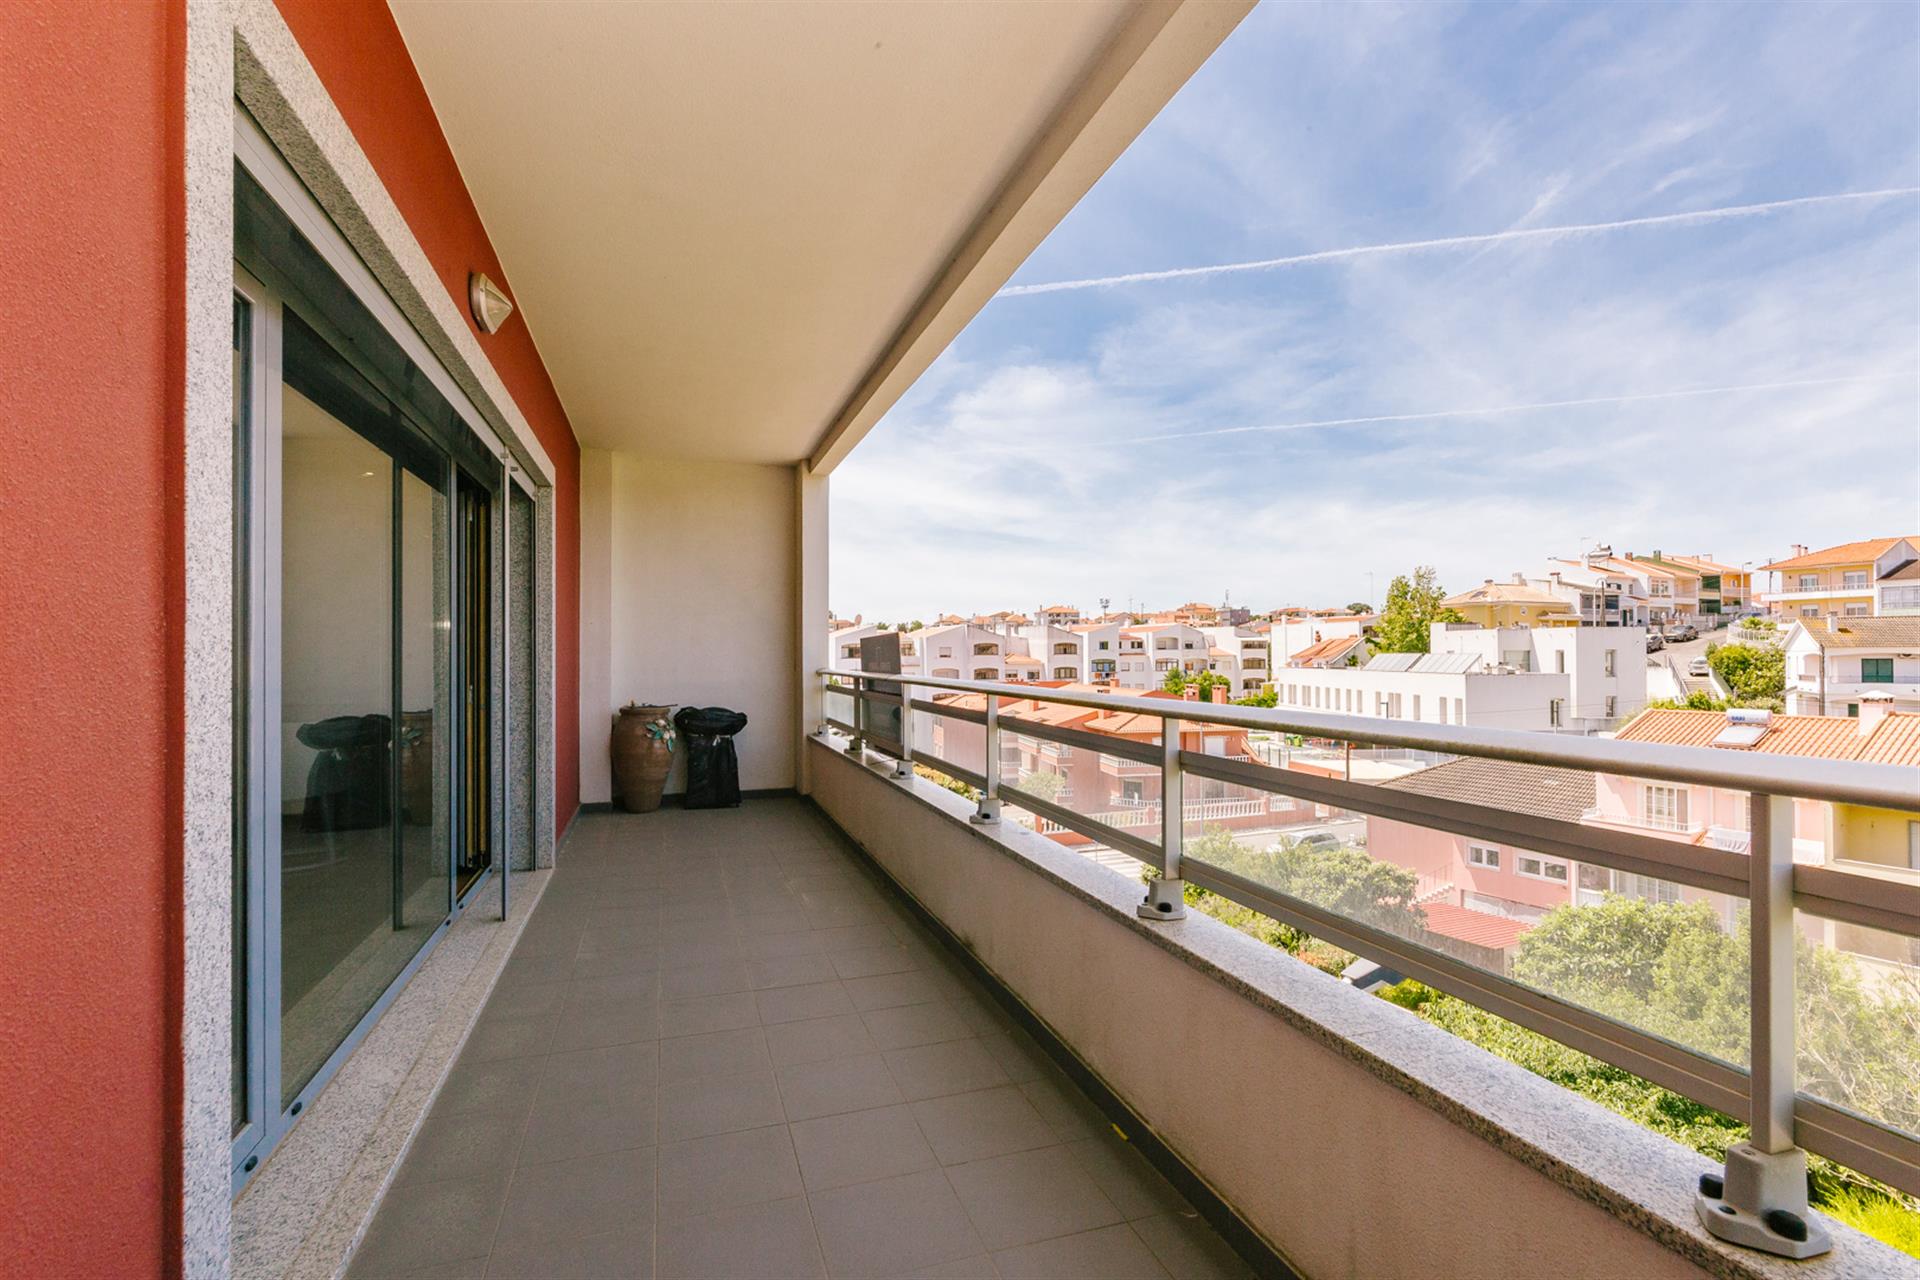   Apartamento T2 Estoril -conforto, espaço e vista desafogada